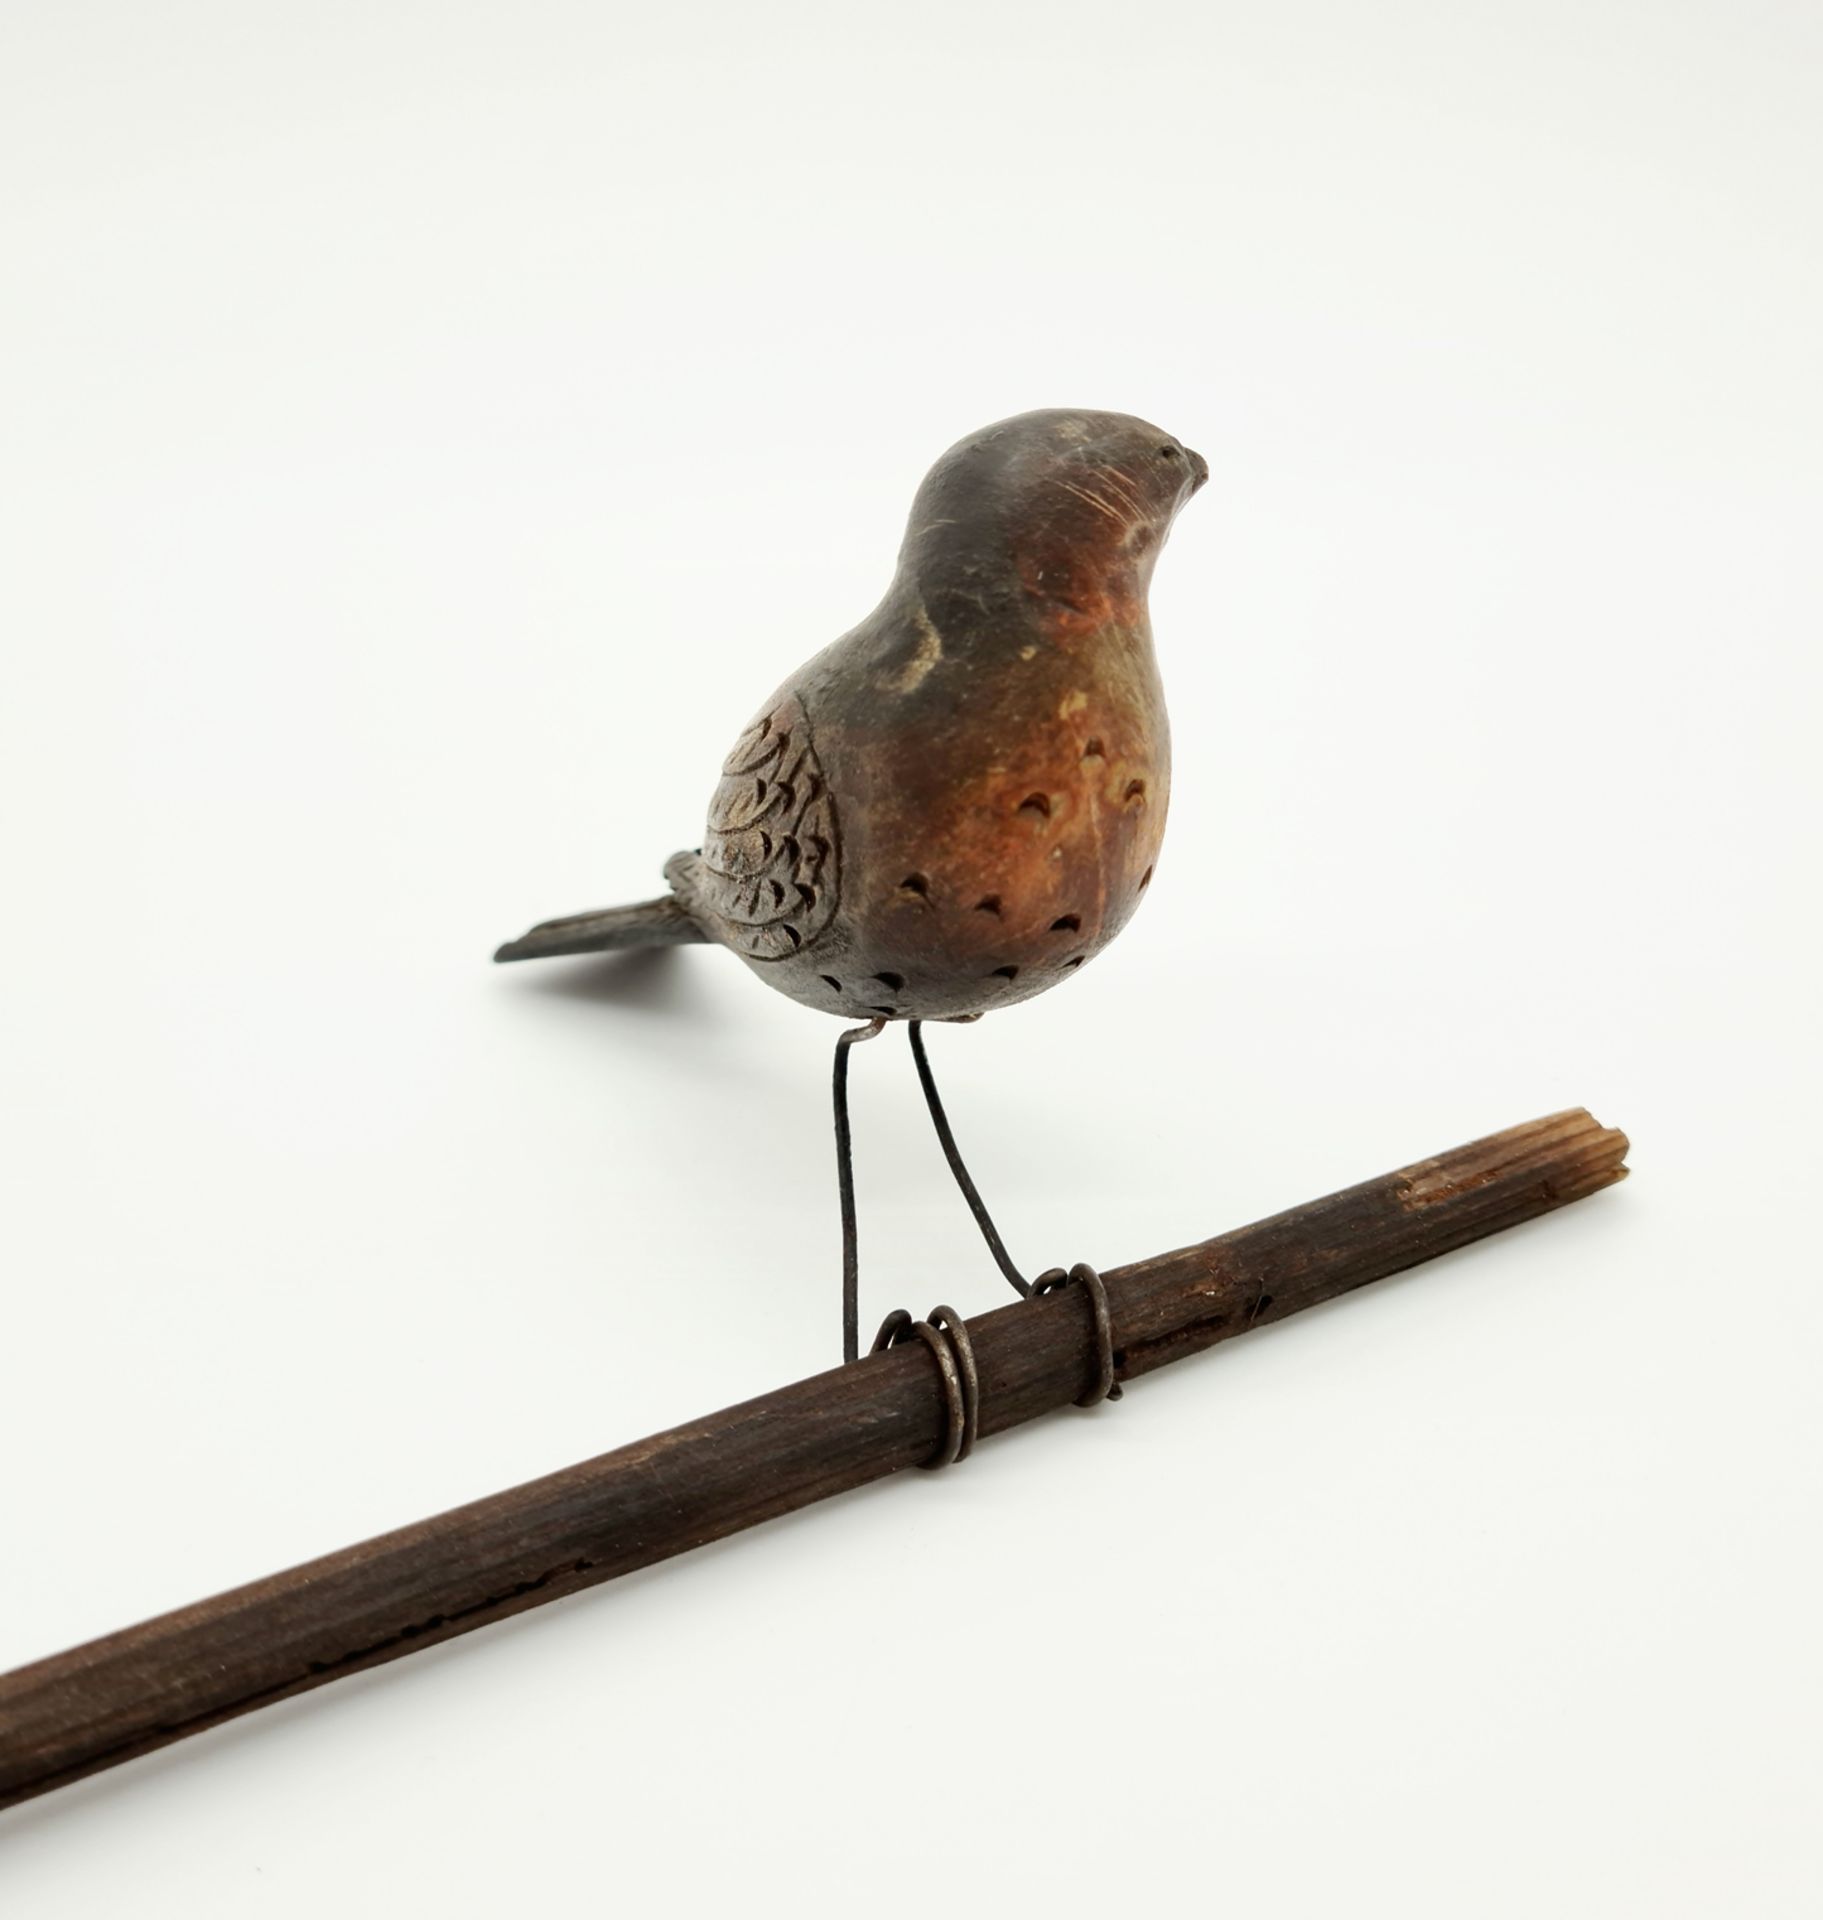 Vögel, Holz bunt bemalt, Vogellänge je: 10cm, 12 ,5 cm, Ende 19. Jhd, - Image 3 of 3